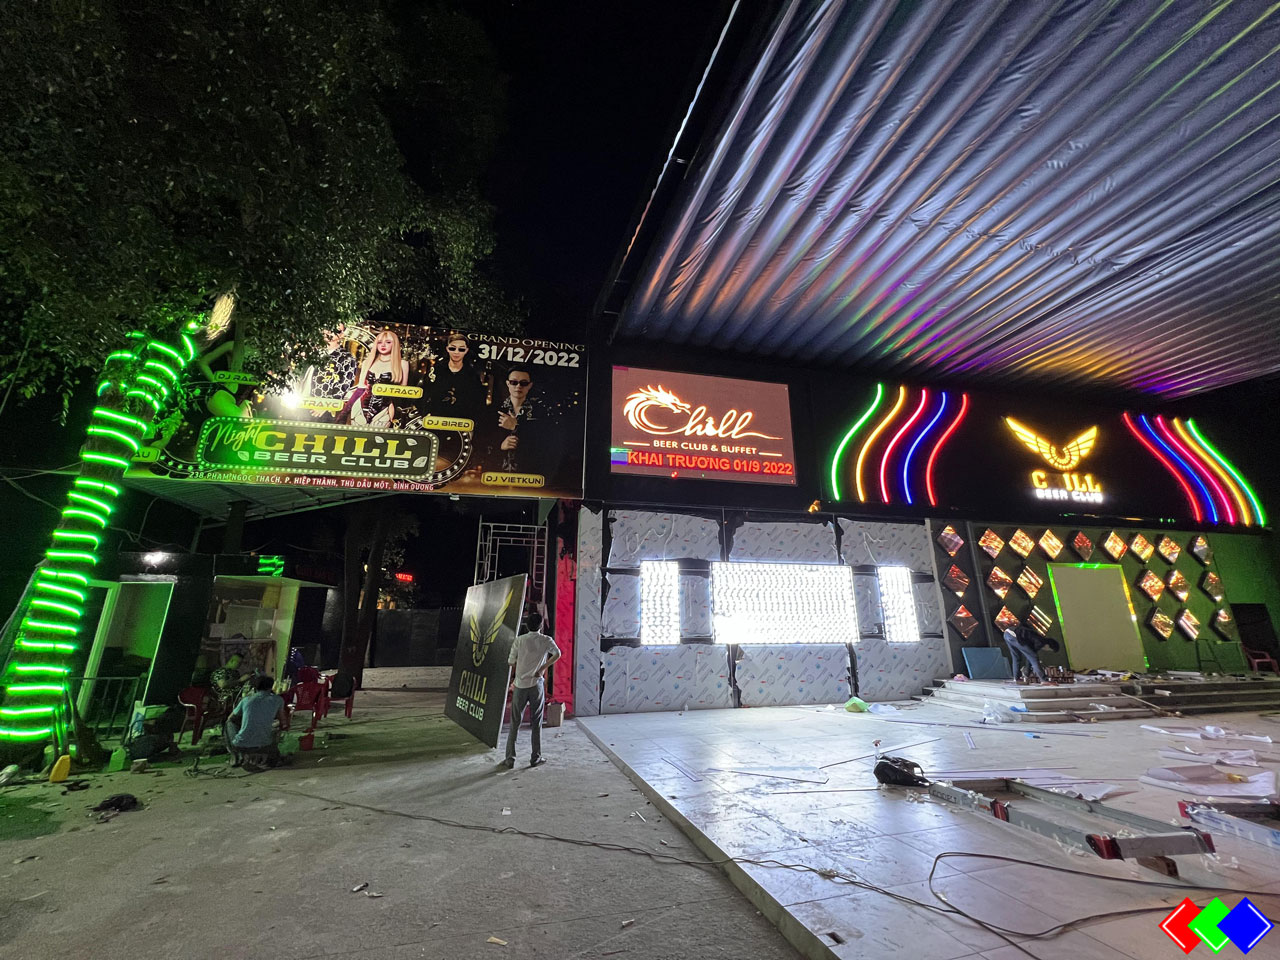 Hệ Thống Ánh Sáng Màn Hình LED Cho Quán CHILL Beer Club Thủ Dầu Một - Bình Dương.